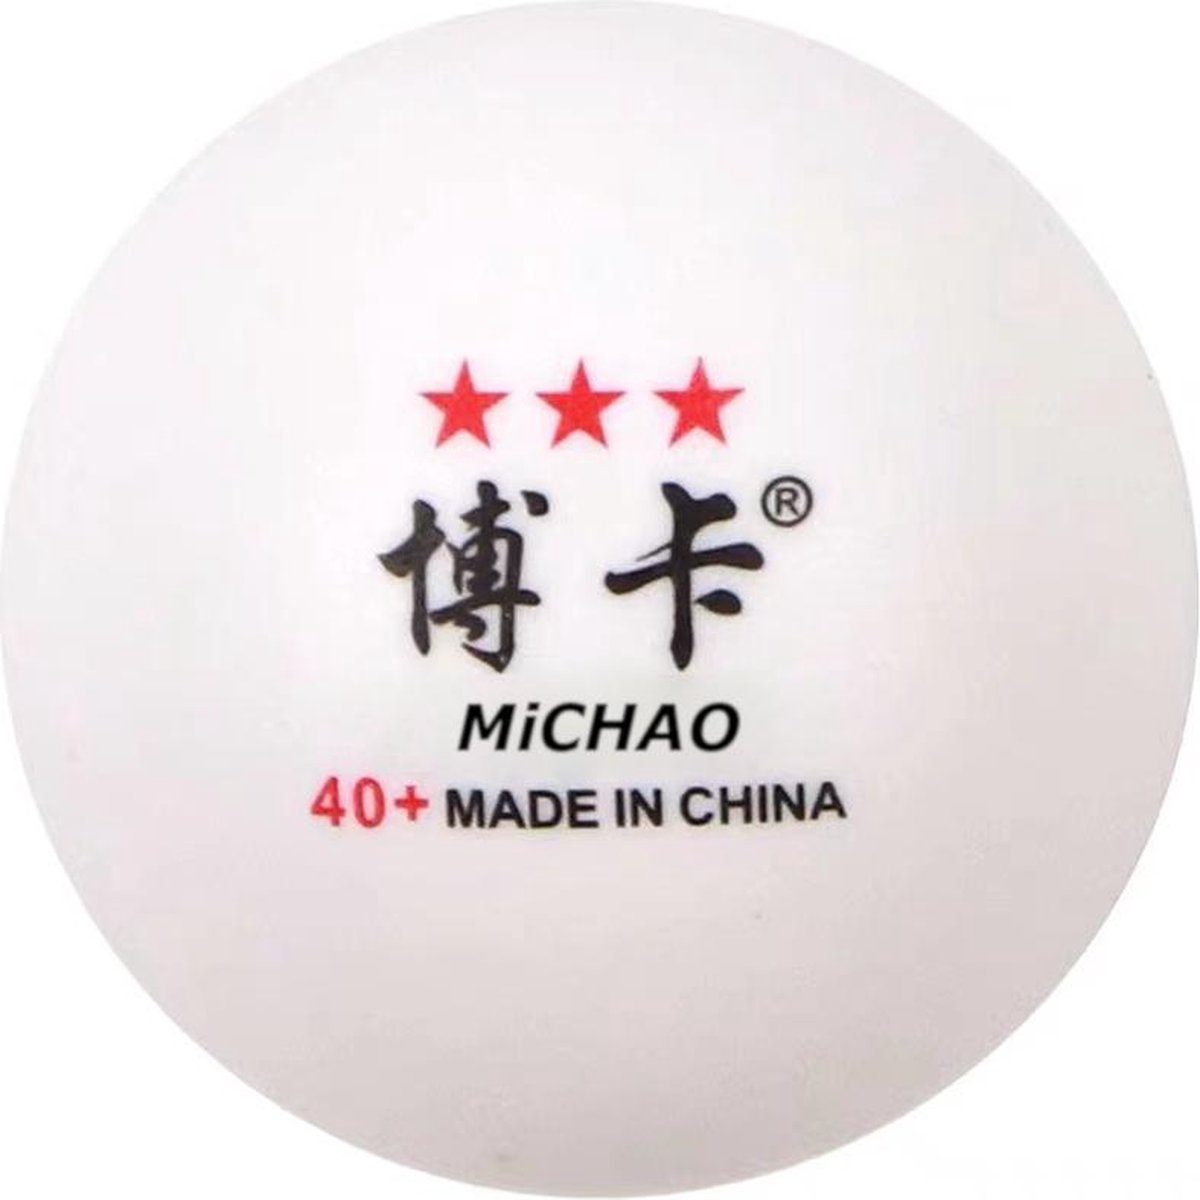 Racketclub Michao - Professionele originele Chinese Tafeltennis ballen van hoge kwaliteit (3 star ***) - Per 100 stuks - 40+ mm - Naadloos - Perfecte trainingsballen voor budget prijs